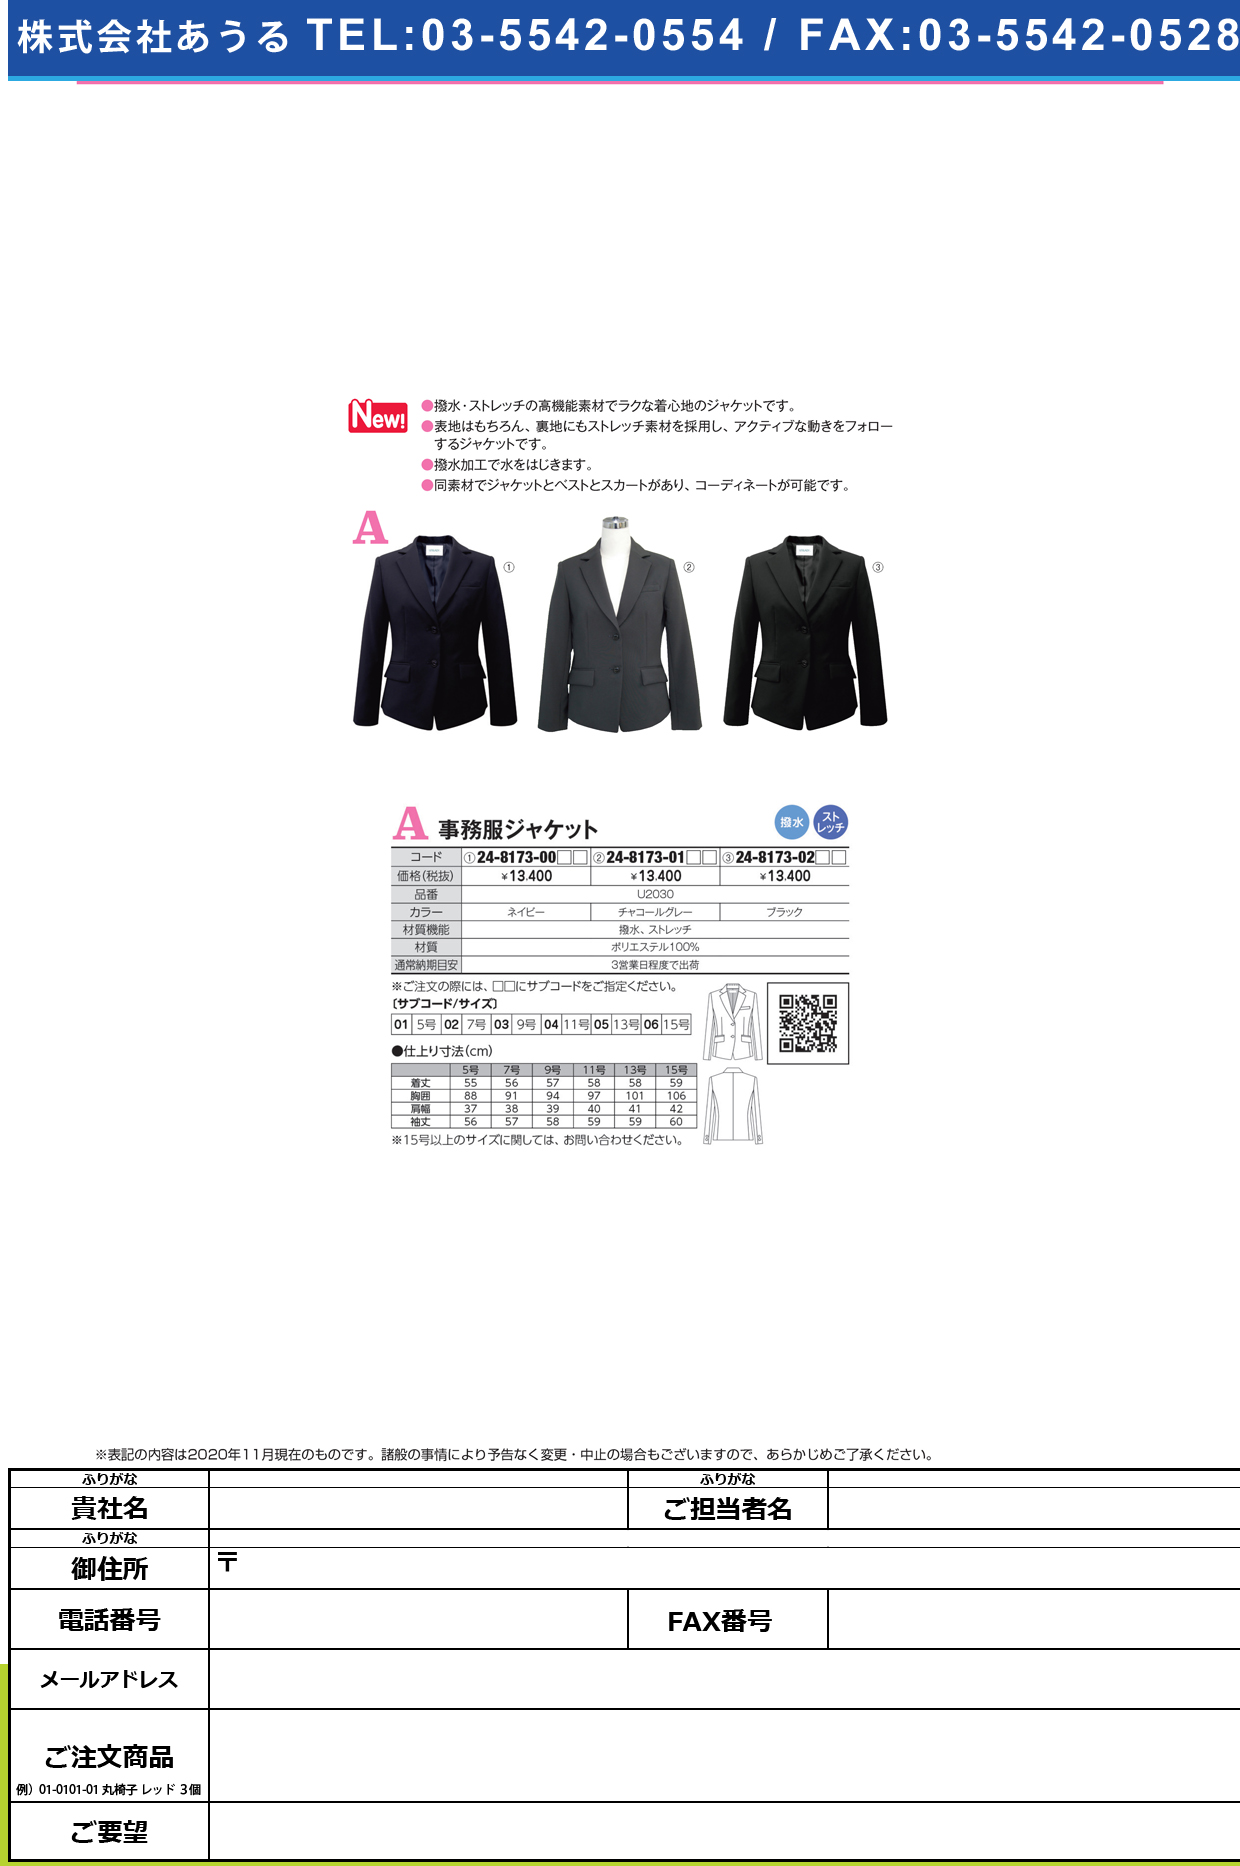 事務服ジャケット U2030(ブラック)U2030(ﾌﾞﾗｯｸ)７(24-8173-02-02)【ヤギコーポレーション】(販売単位:1)